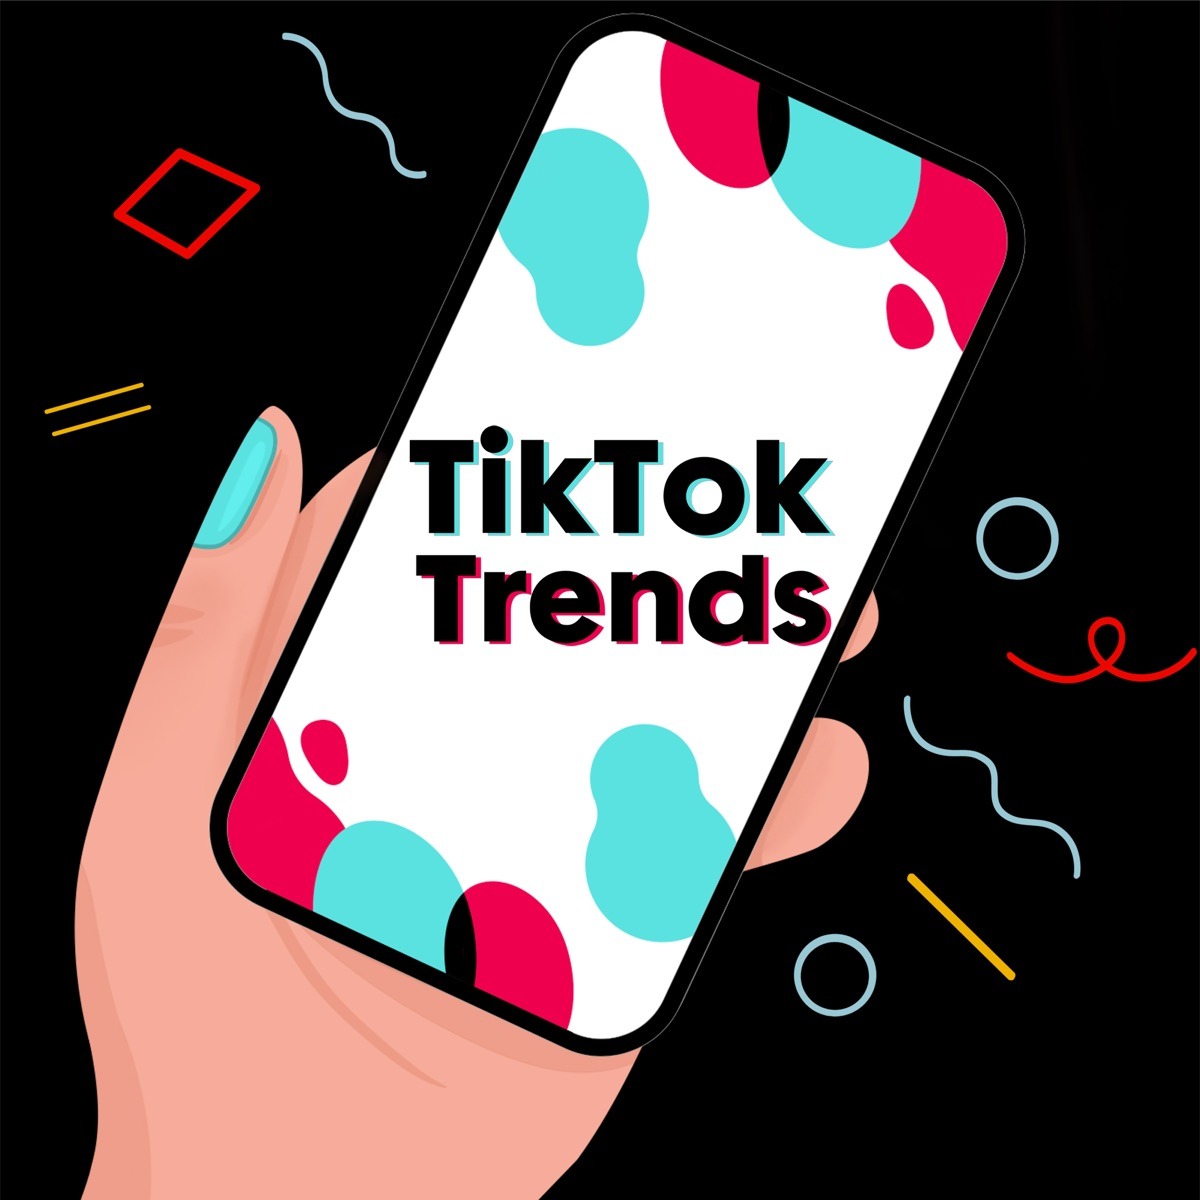 Dans cet article, nous nous sommes concentrés sur les tendances TikTok, le fonctionnement de la découverte des tendances TikTok et la manière d'utiliser les tendances TikTok pour améliorer l'exposition de votre marque.